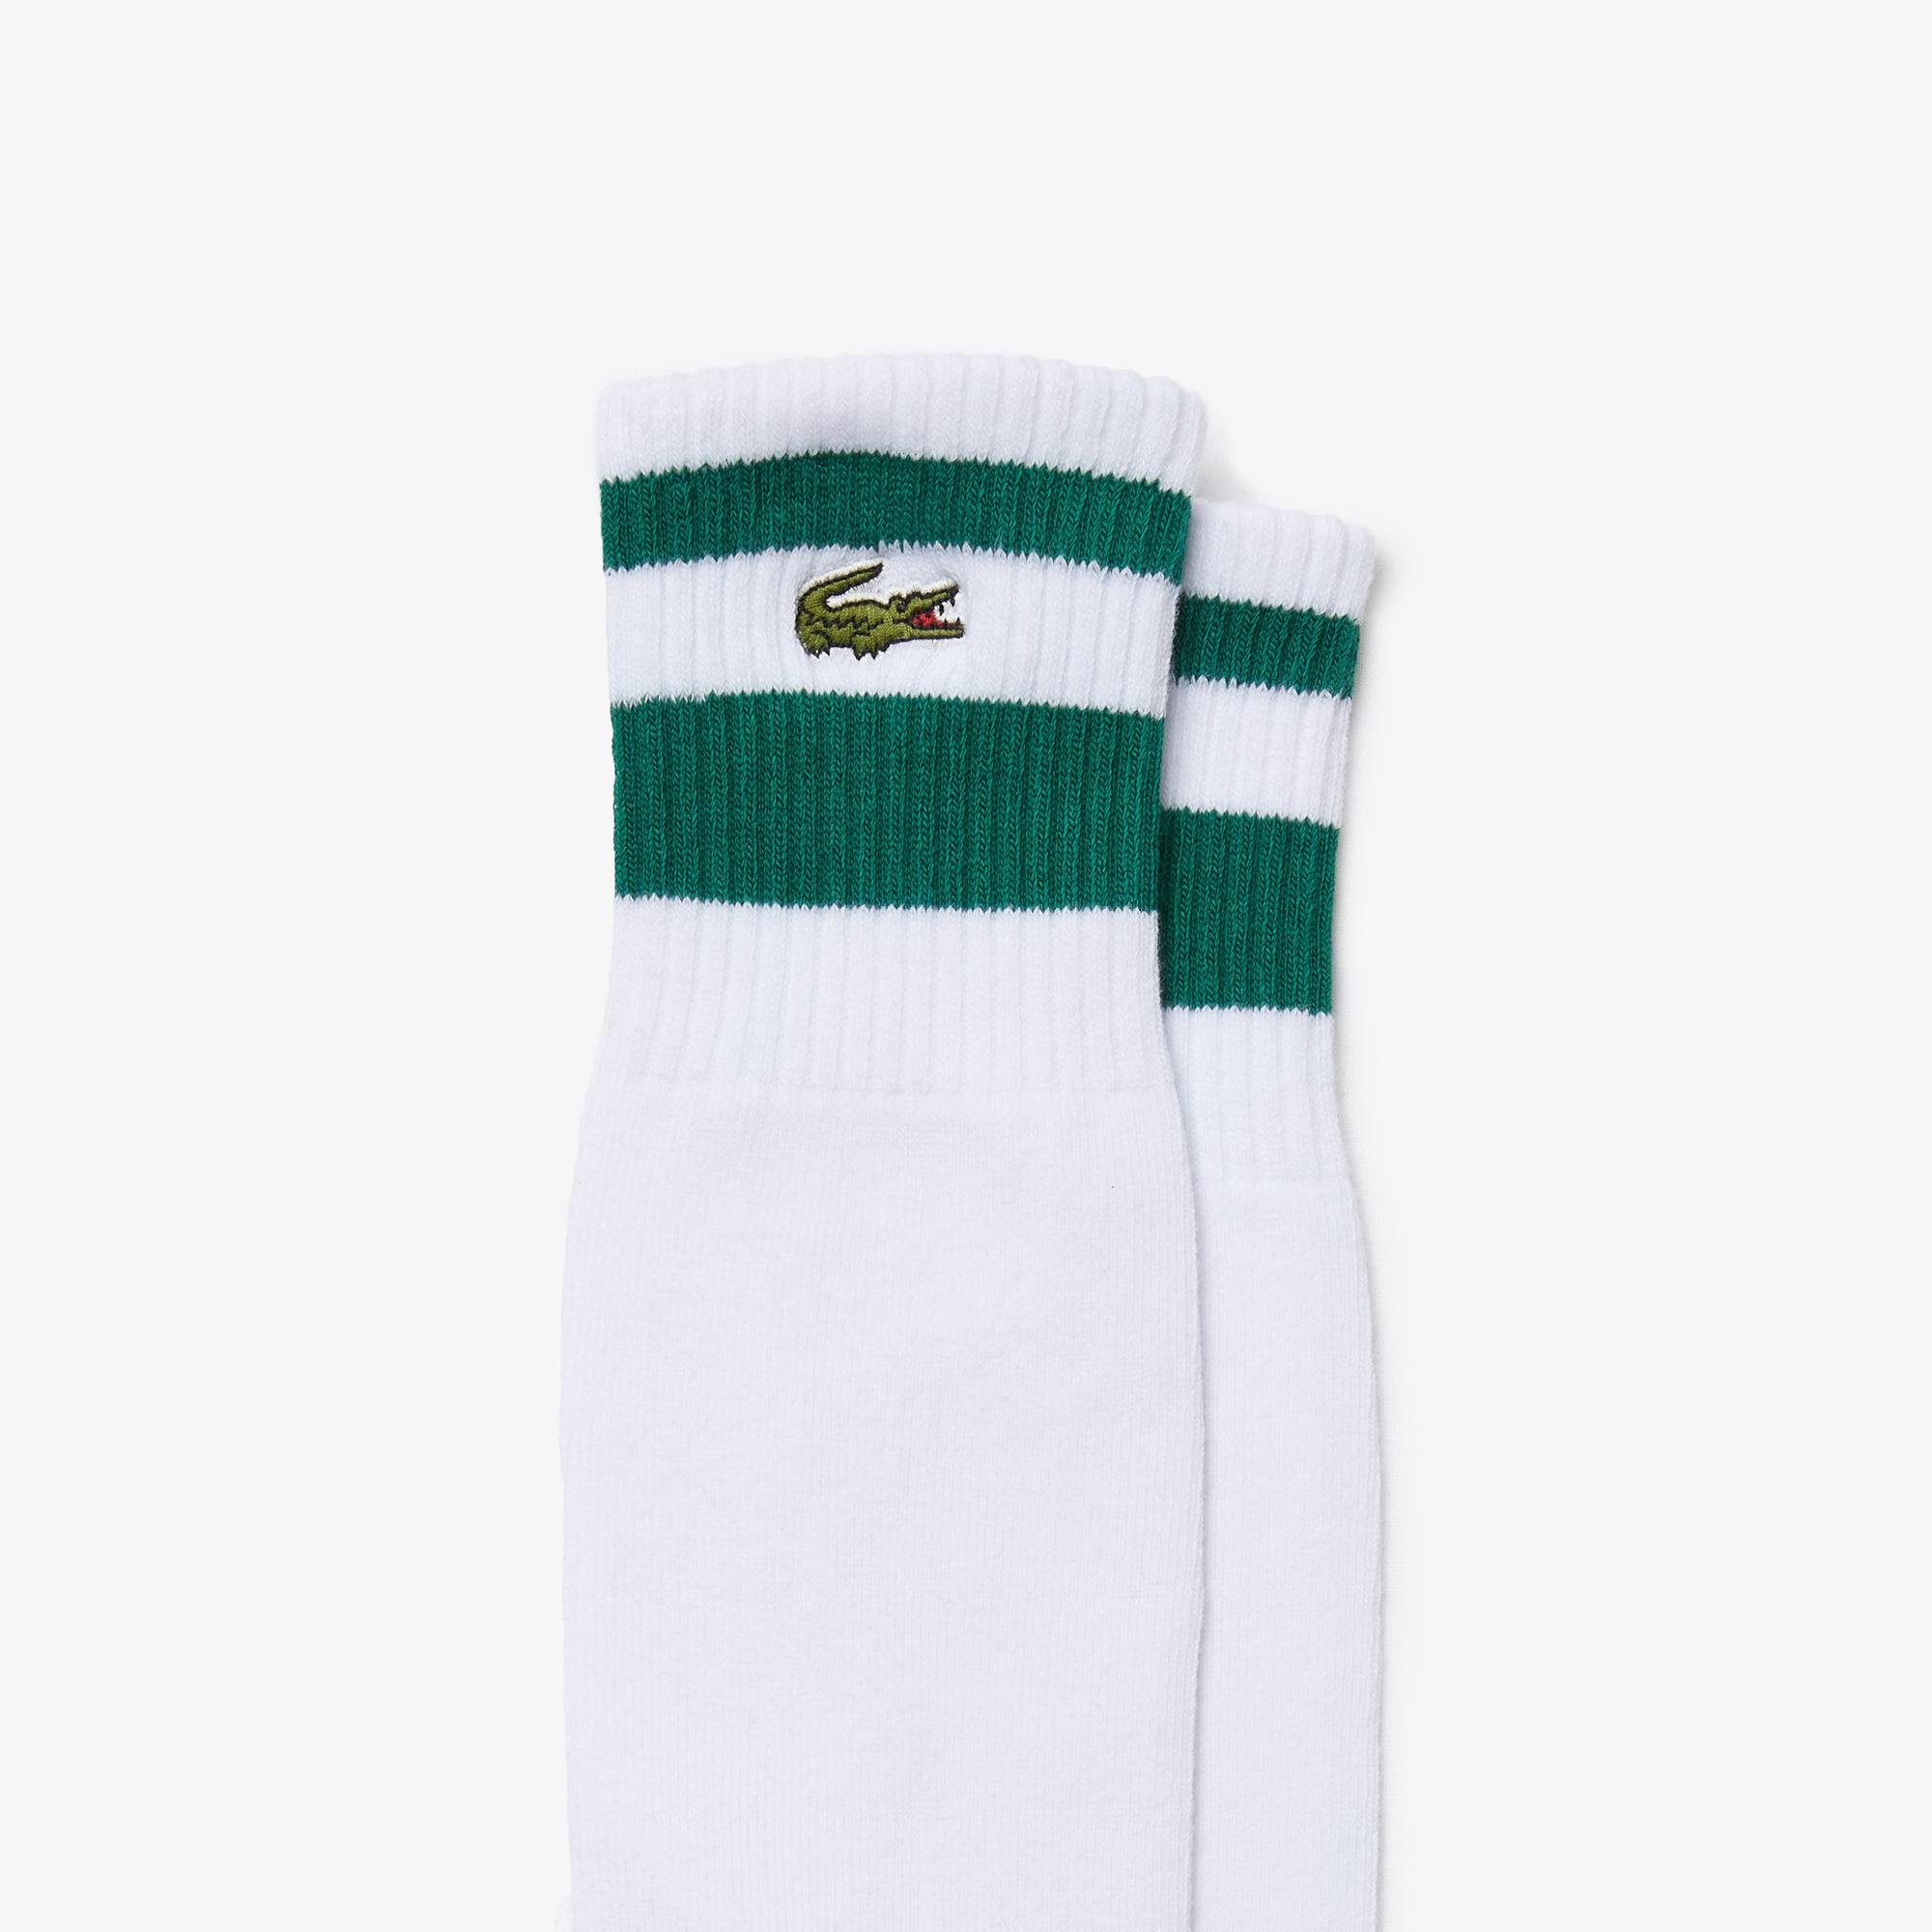 lacoste tennis socks